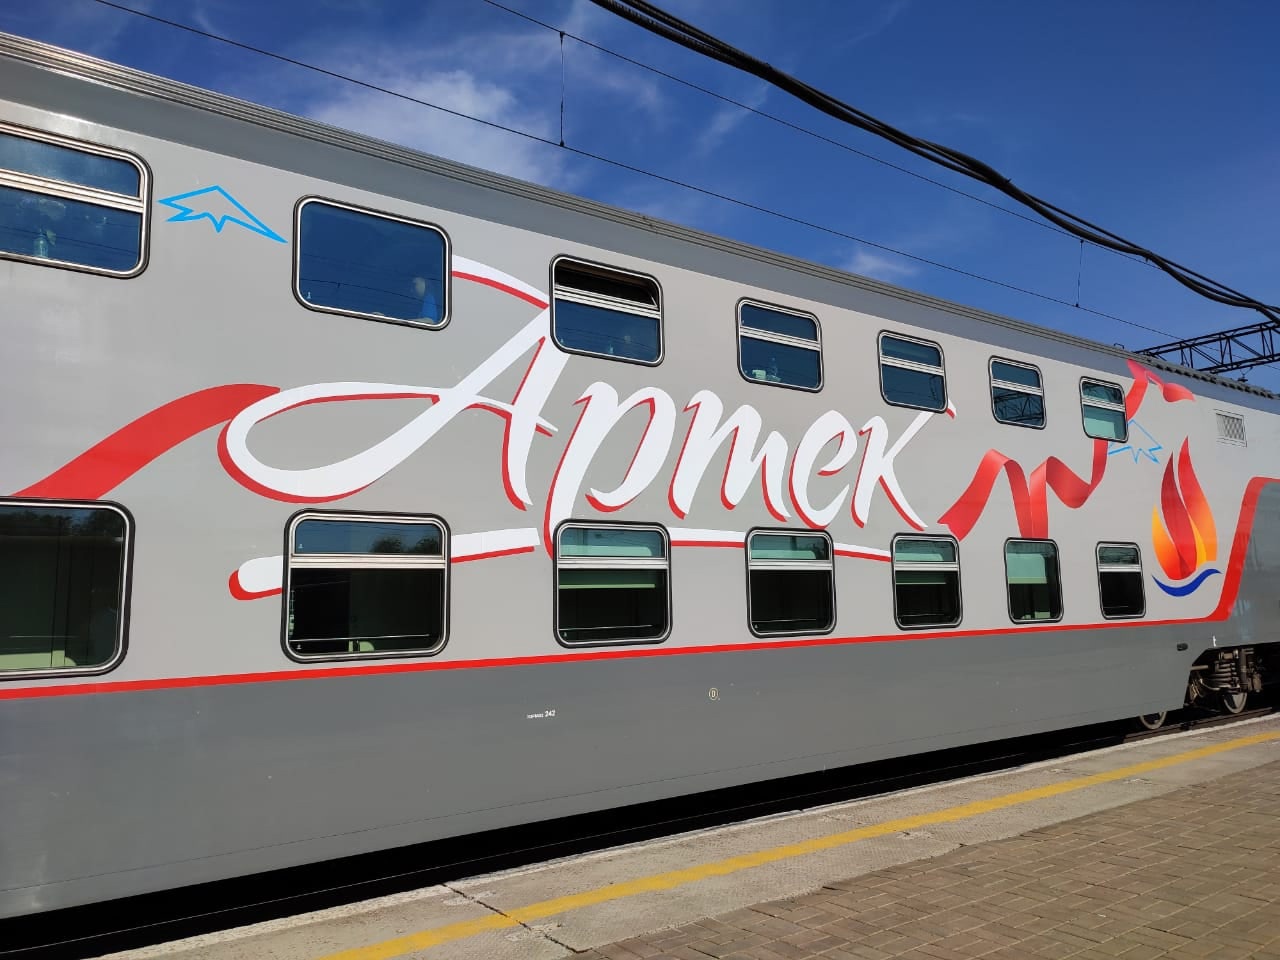 Участники седьмой смены “Артека” прибыли в Симферополь специальным “Артековским” поездом